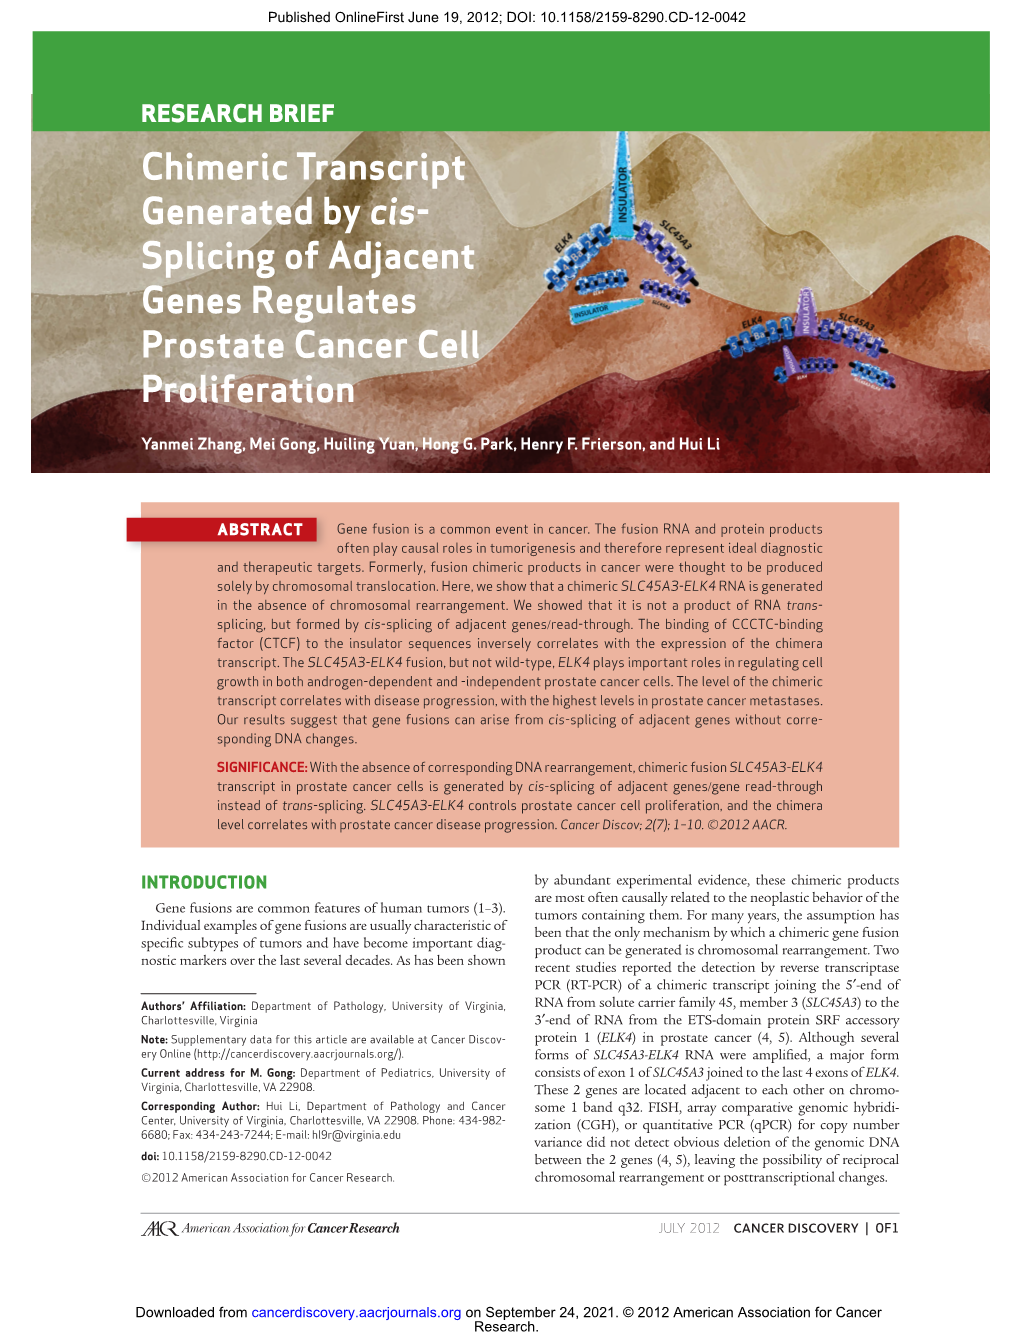 Splicing of Adjacent Genes Regulates Prostate Cancer Cell Proliferation